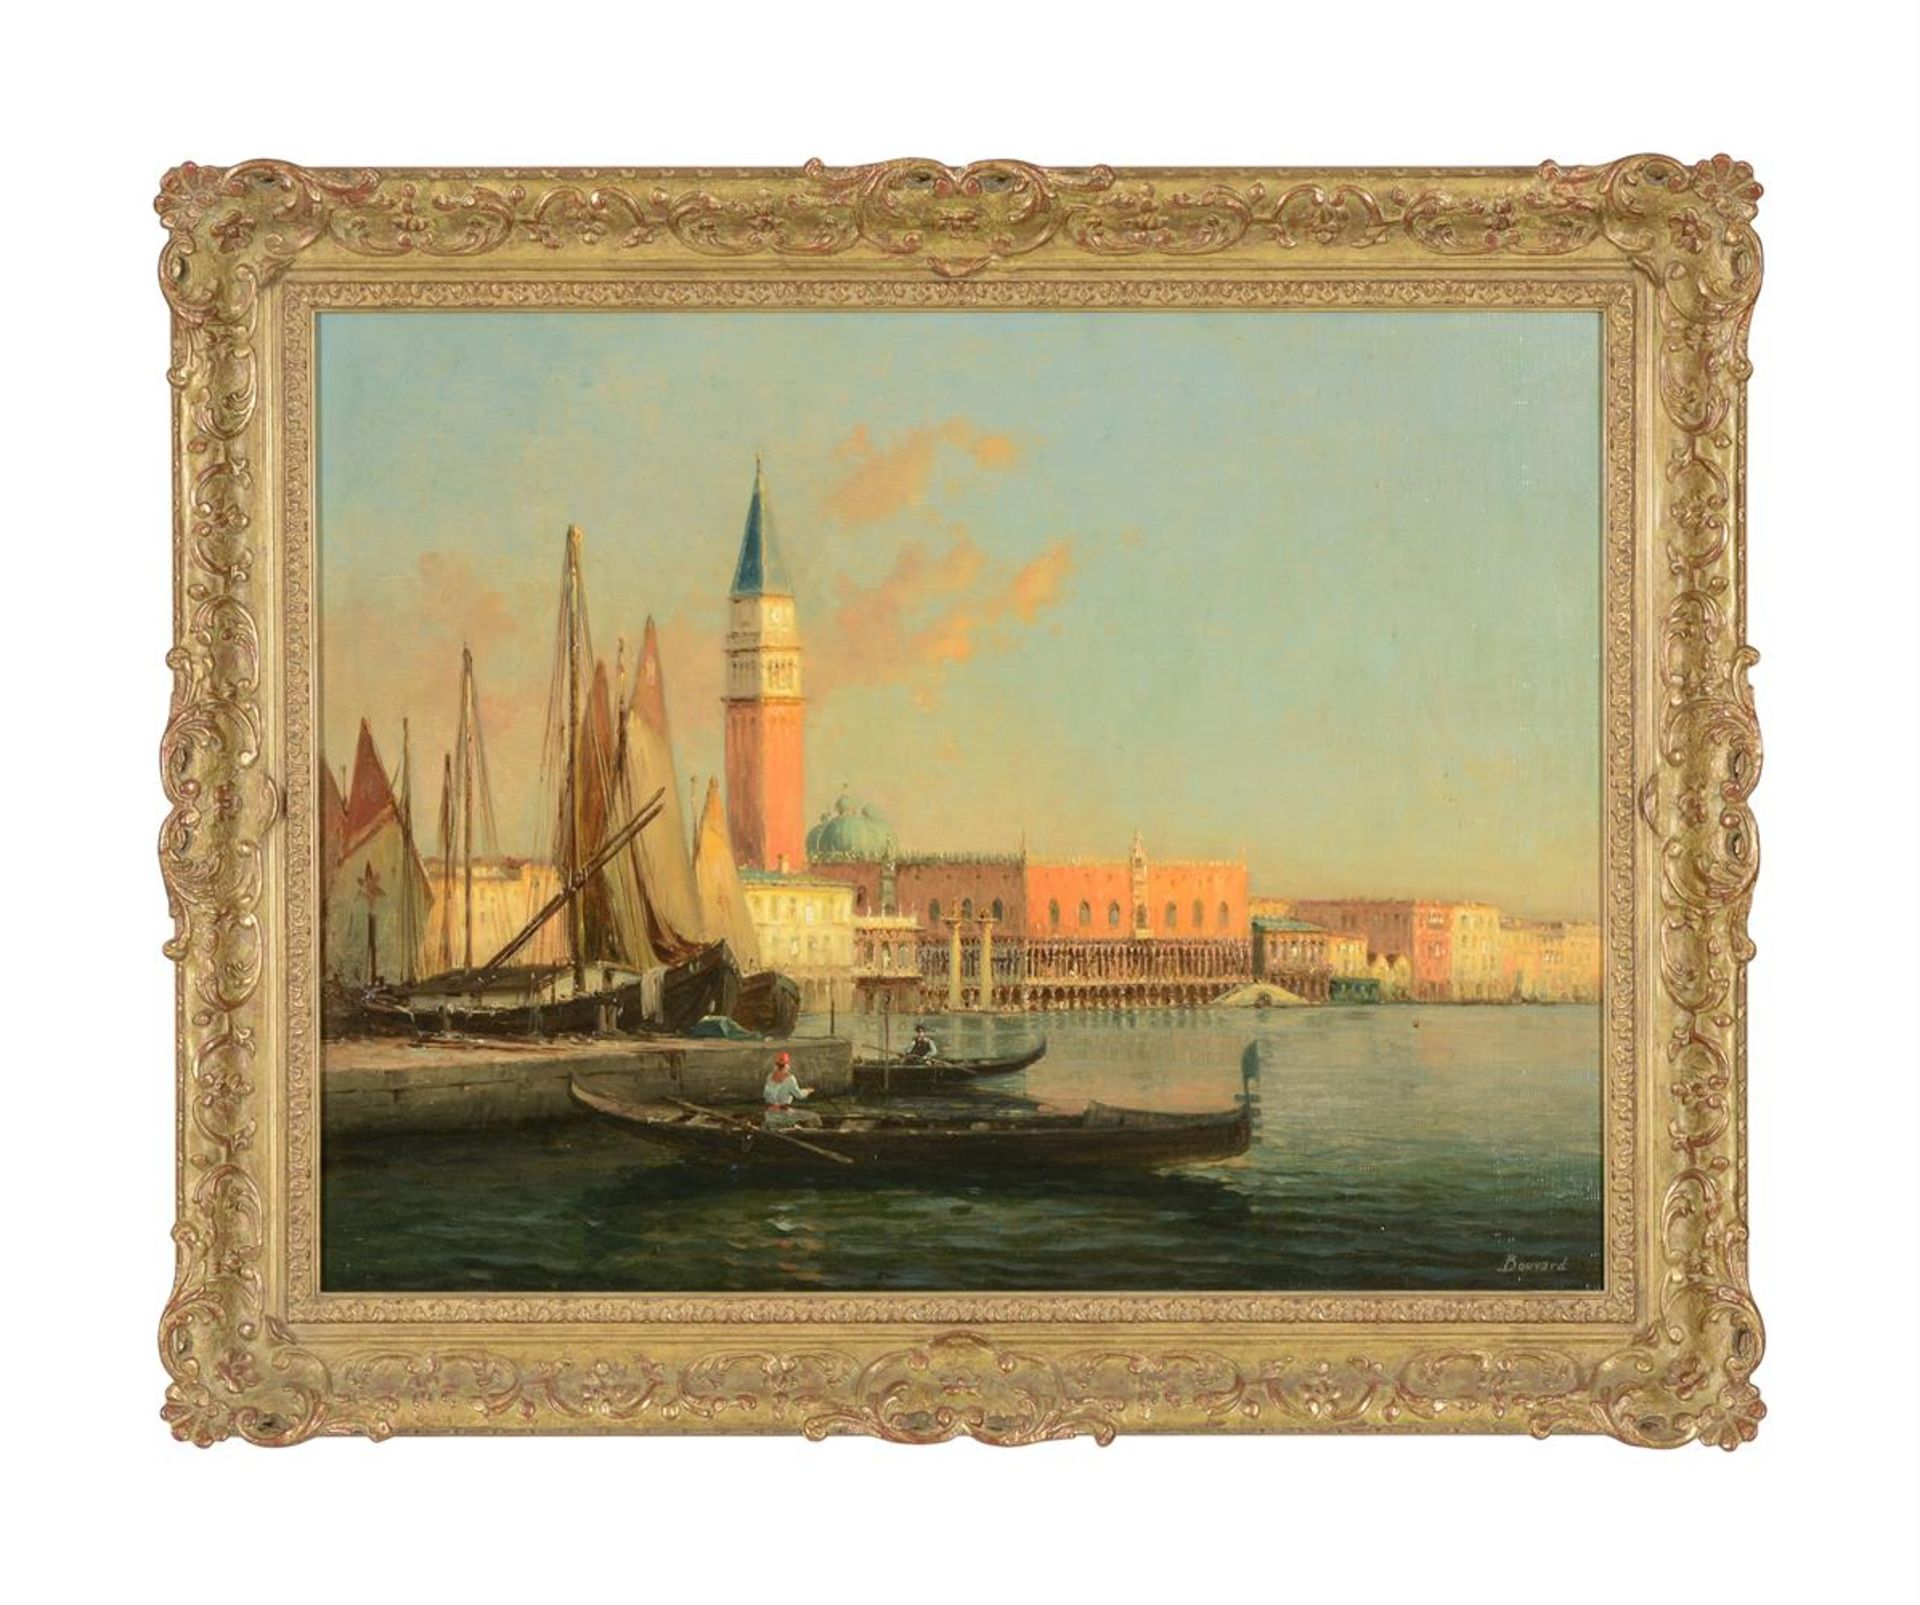 λ ANTOINE BOUVARD (FRENCH 1870-1956), THE DOGE'S PALACE AND CAMPANILE - Image 2 of 3